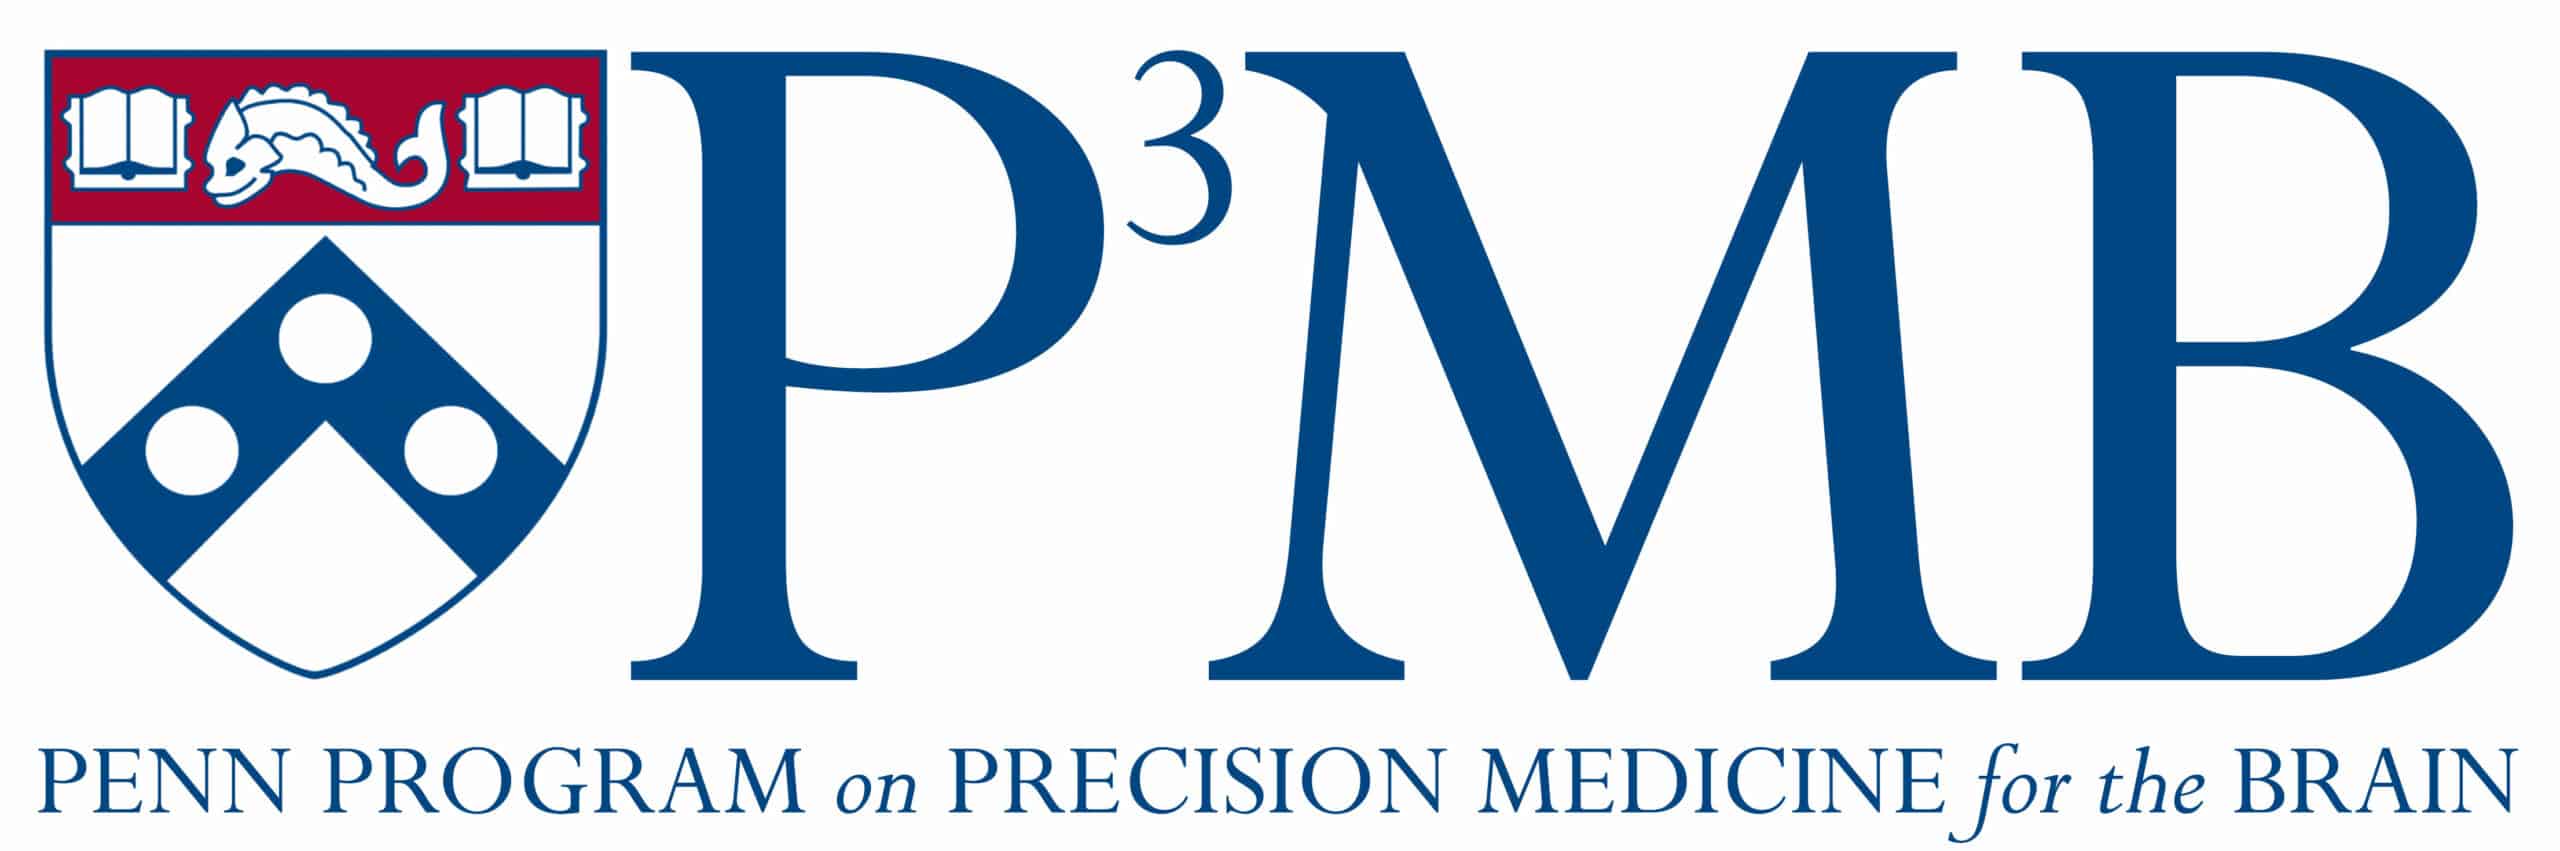 The Penn Program on Precision Medicine for the Brain - Penn Memory Center